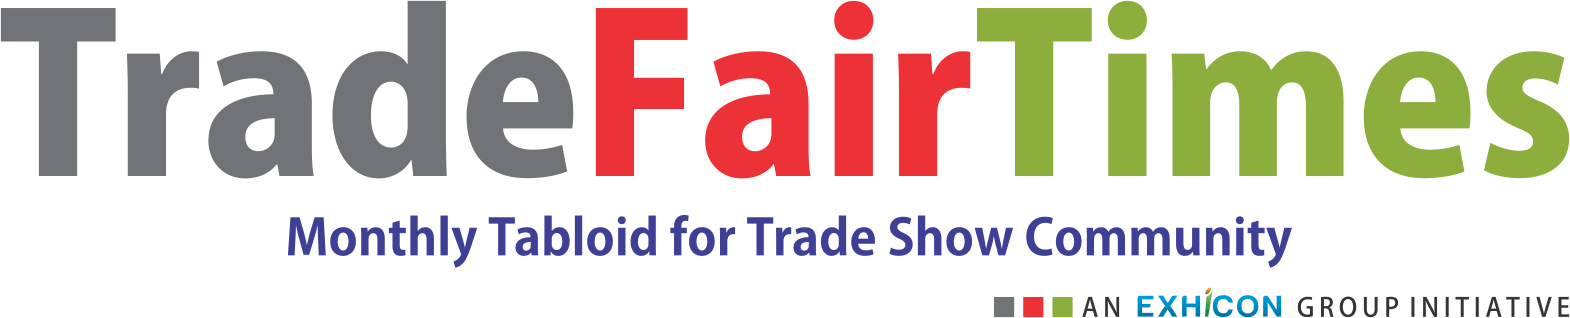 Trade Fair Times 